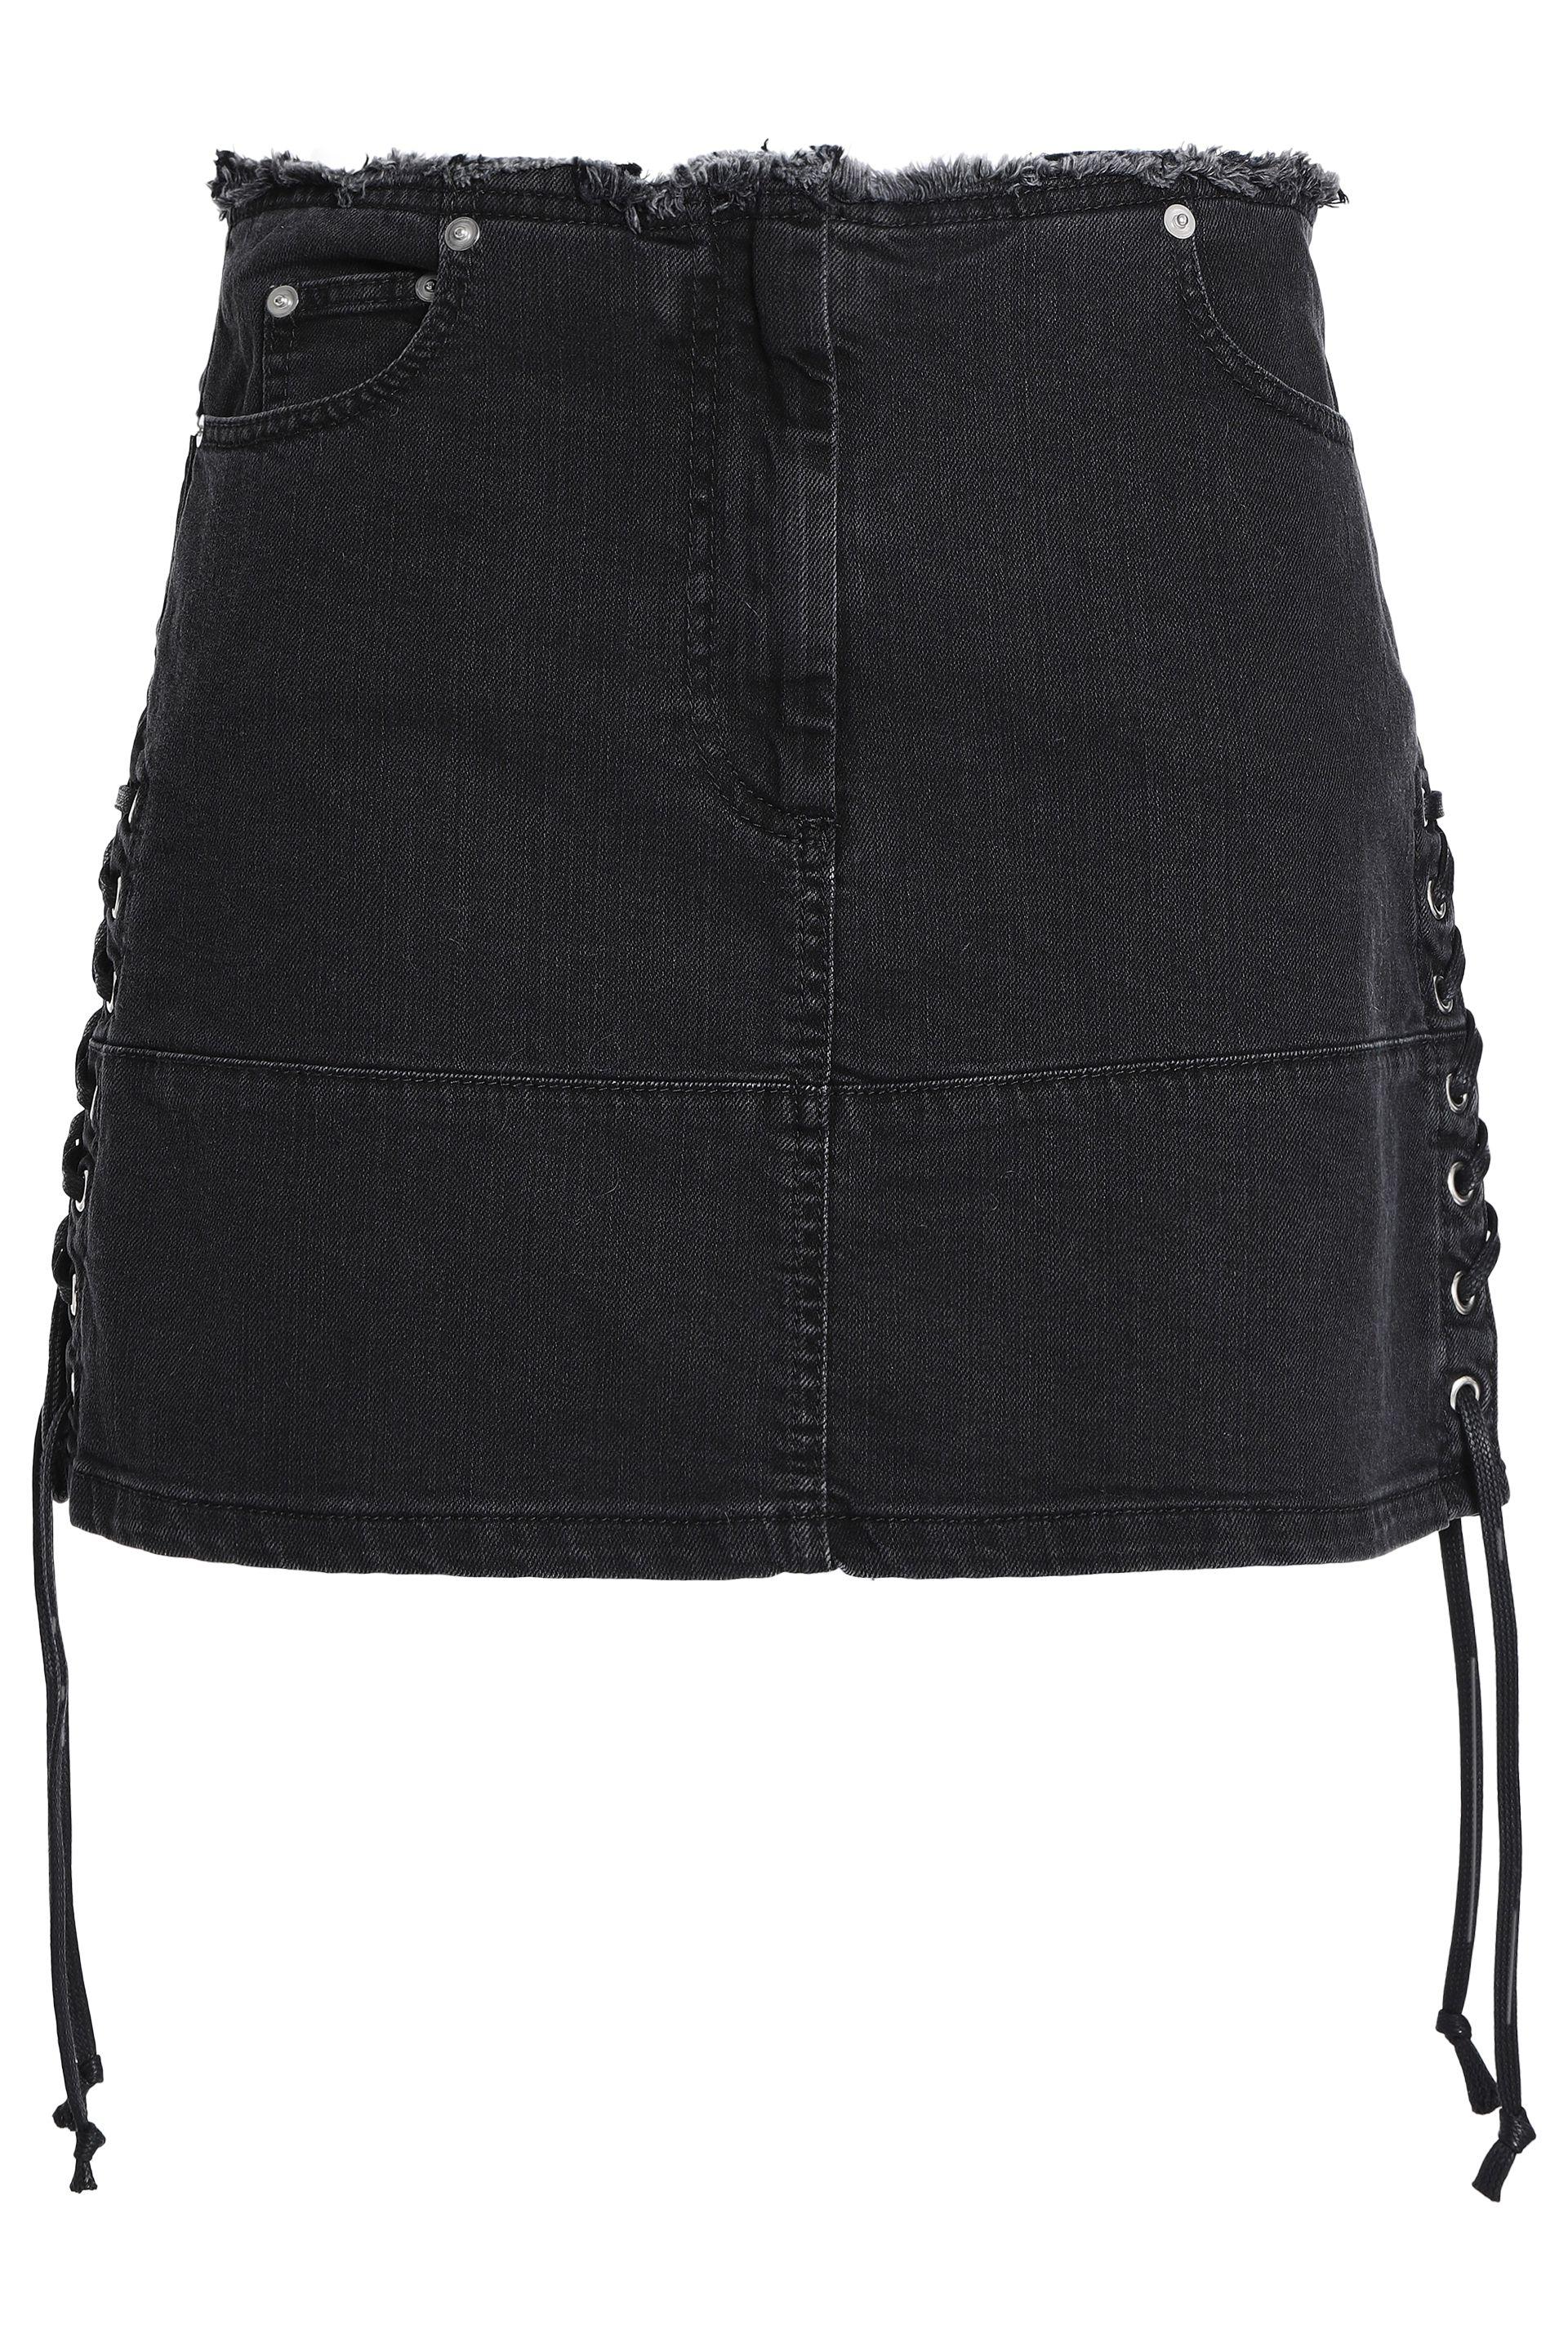 Lyst Mcq Woman Lace Up Denim Mini Skirt Charcoal In Black